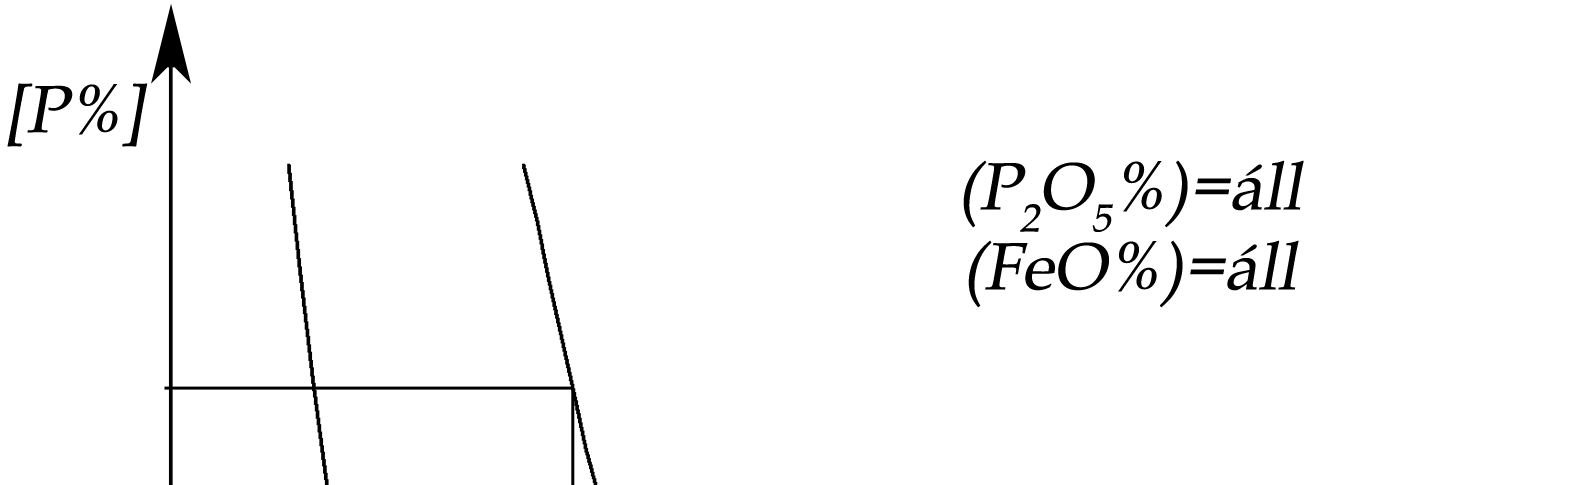 ábra: A vasfázis foszfortartalma a salakfázis P 2 O 5 -tartalma (baloldalon) és CaO-tartalma (jobboldalon) közötti összefüggés.